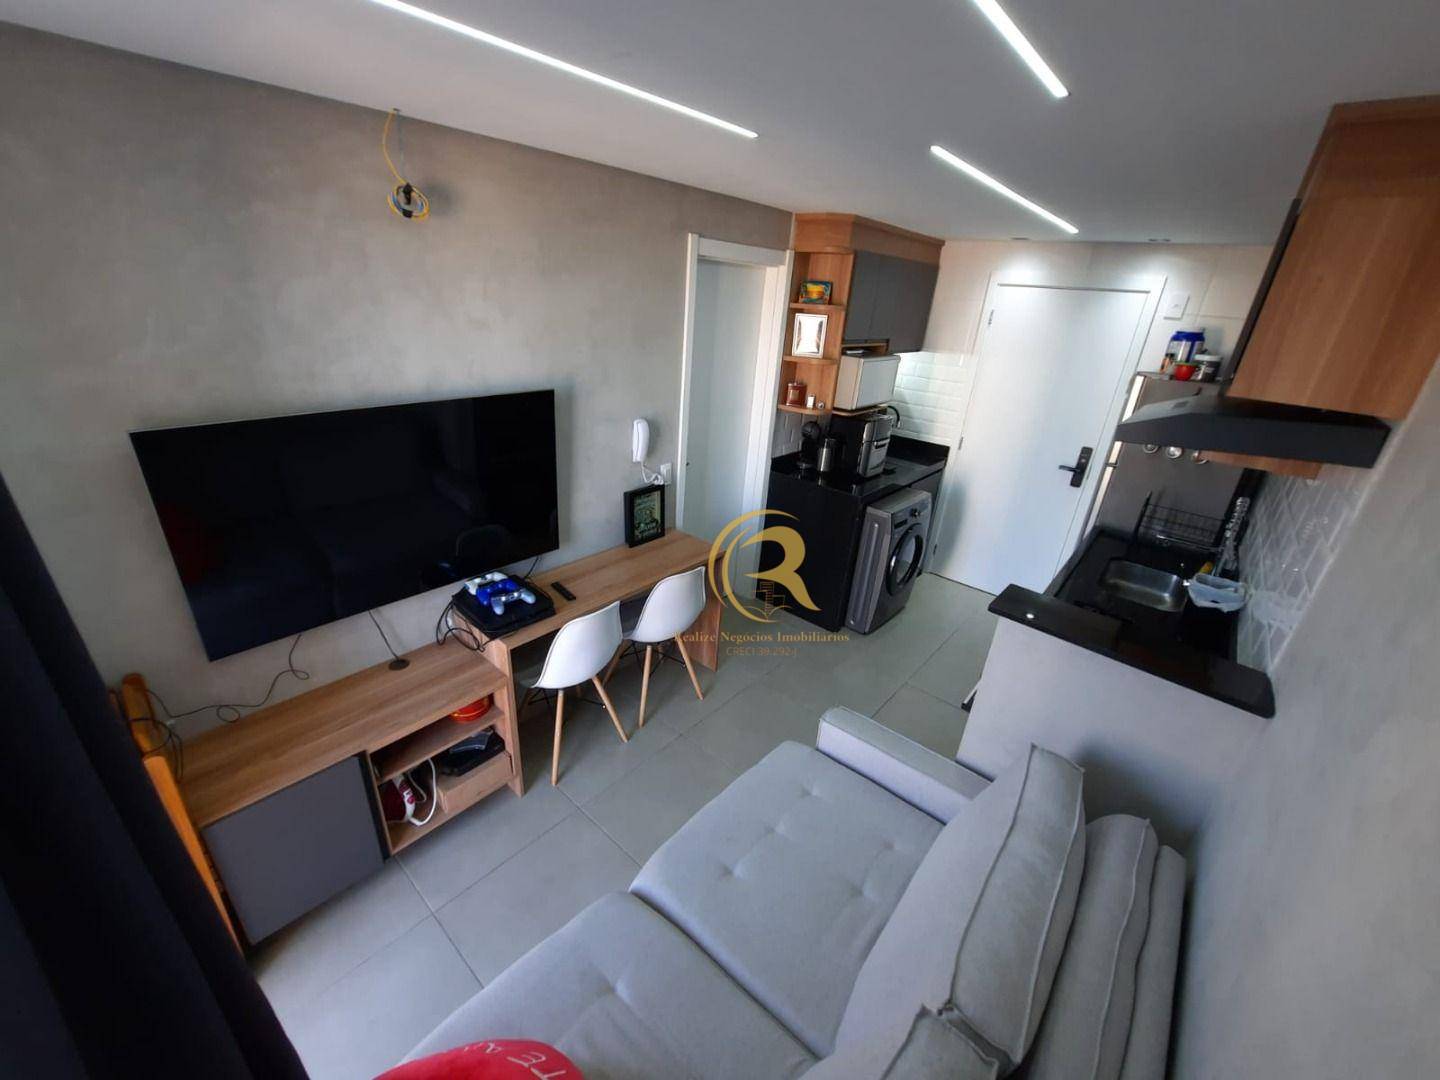 Apartamento com 1 dormitório à venda, 29 m² por R$ 265.000 - Vila Ré - São Paulo/SP